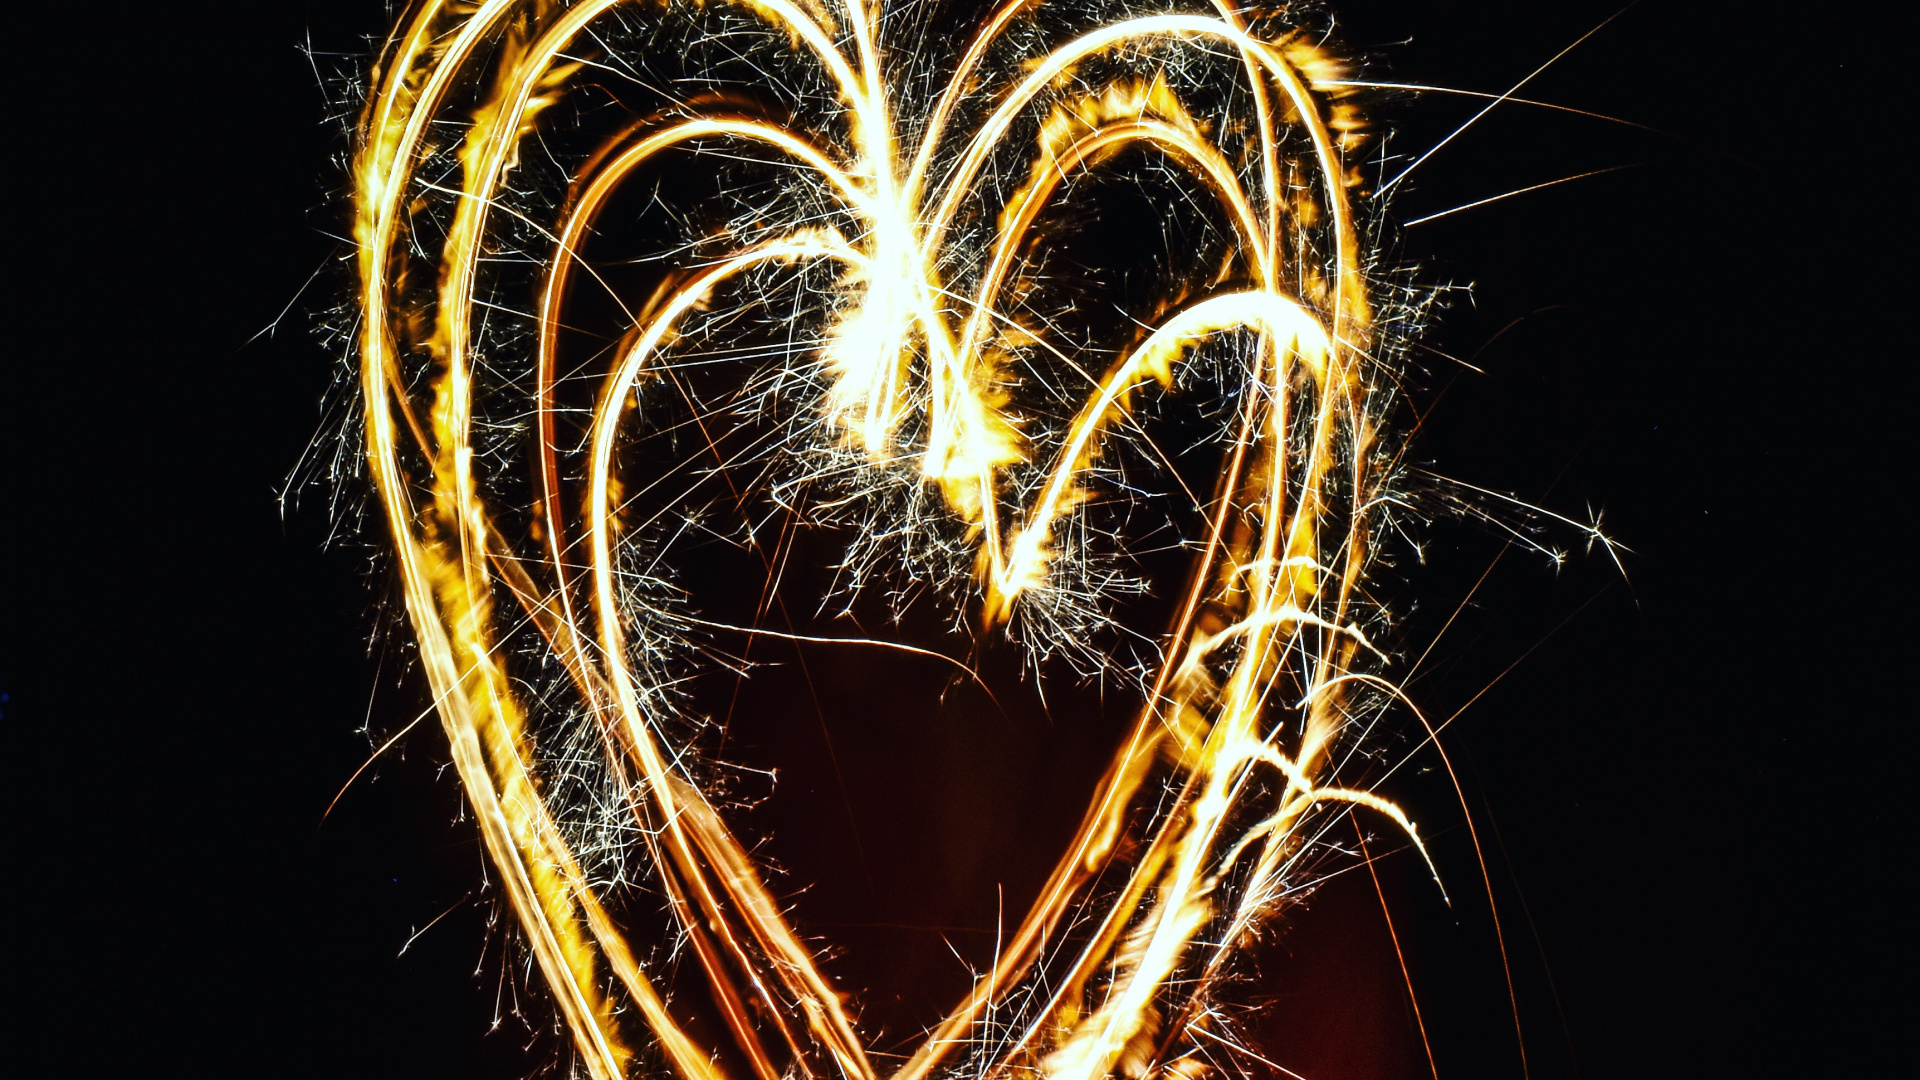 Sparkler, Fireworks, Heart, Light, Love. Wallpaper in 1920x1080 Resolution